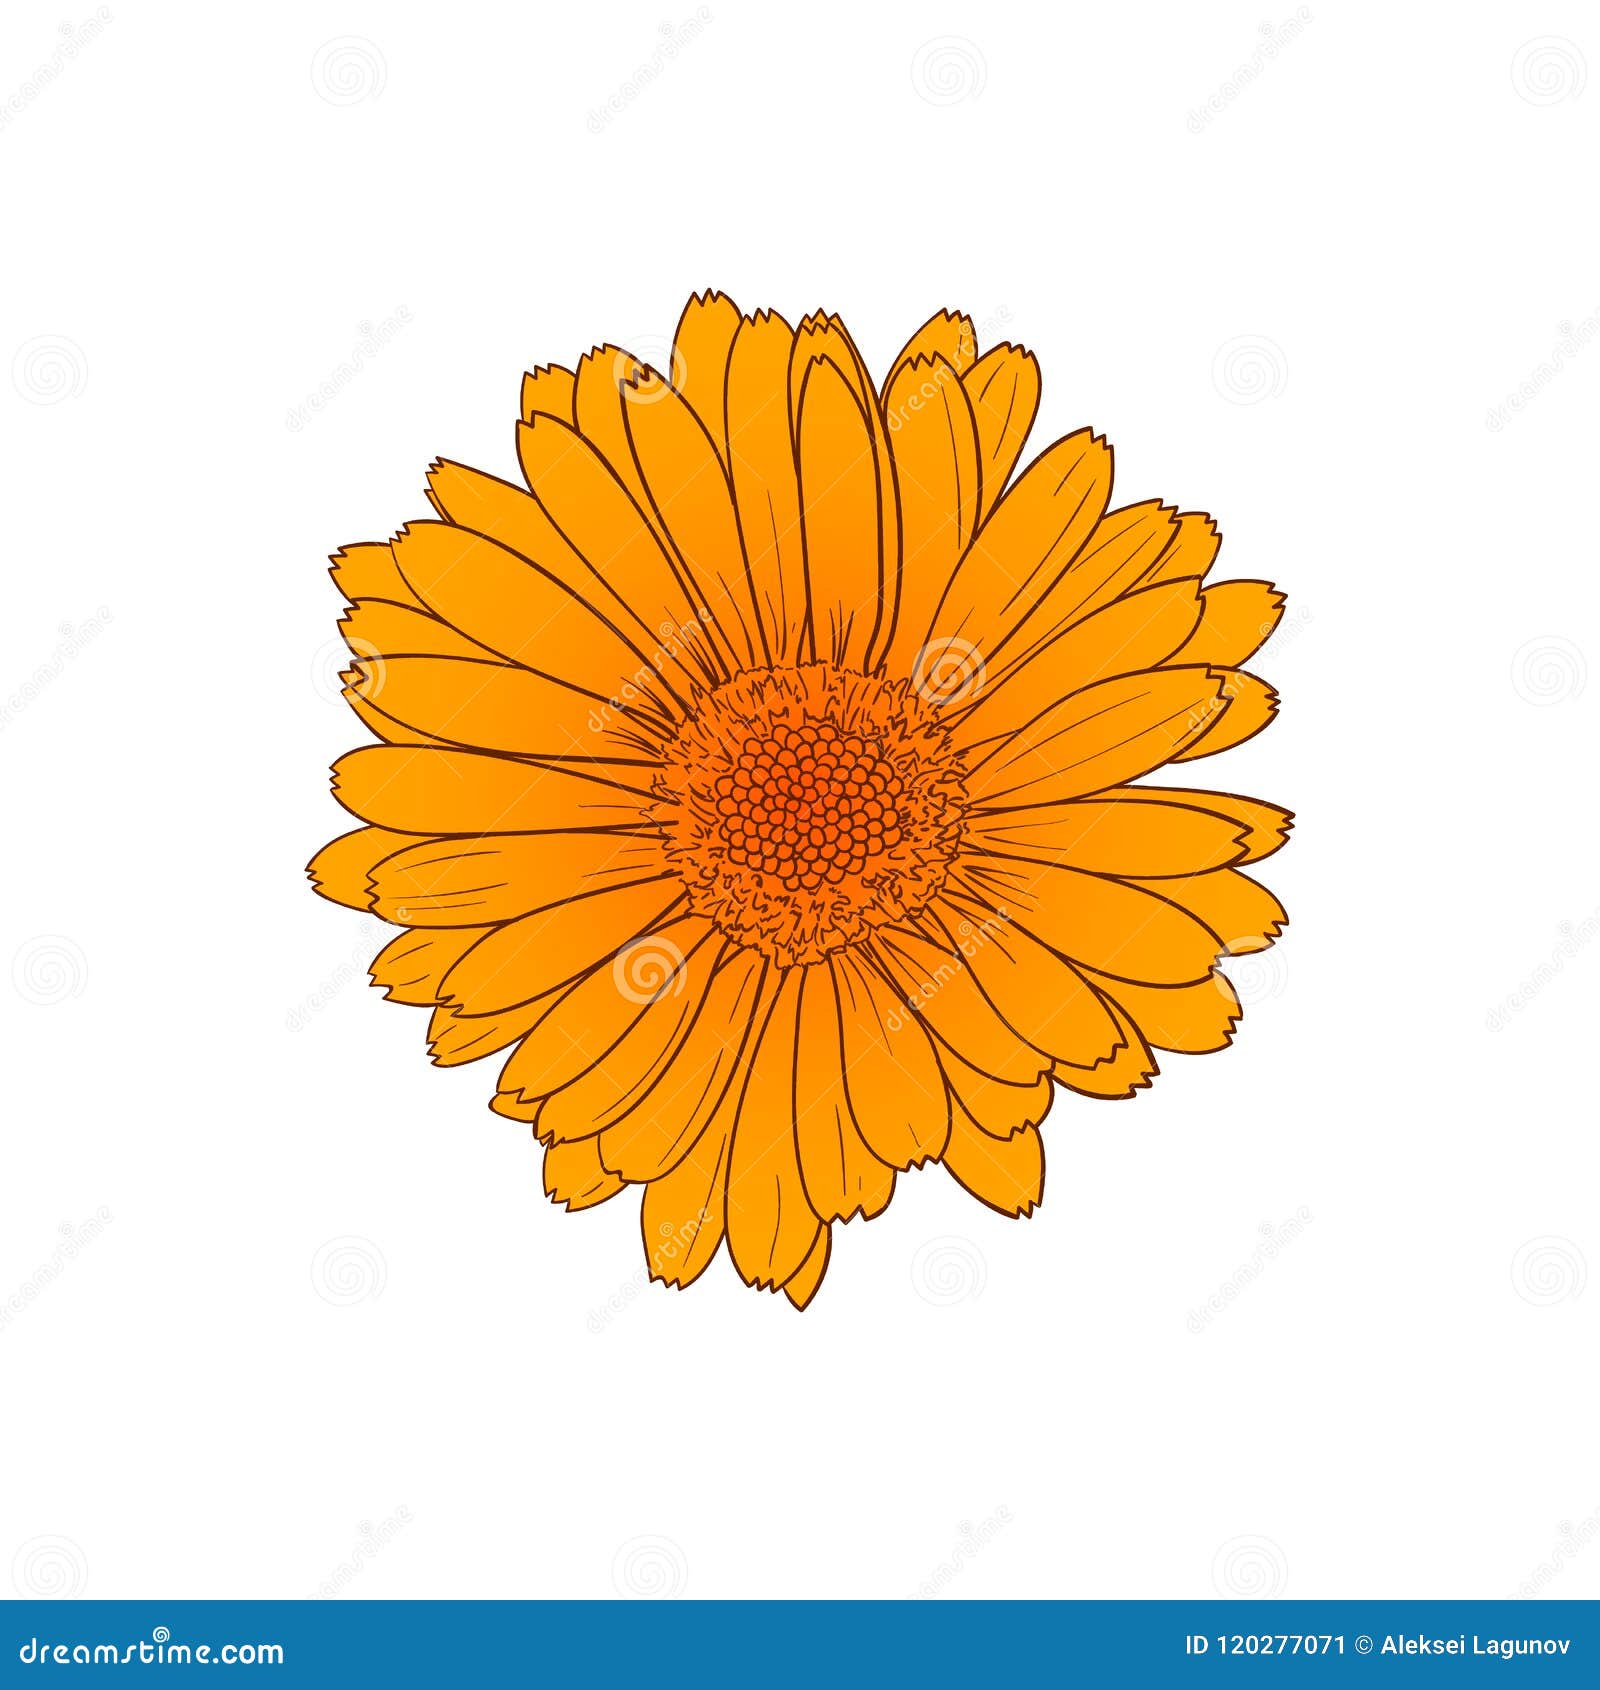 Các bản phác thảo viền của hoa cúc cam này vô cùng đẹp mắt và độc lập, chắc chắn sẽ mang đến cho bạn những thước hình ảnh hoa cúc cam vô cùng tuyệt vời để sử dụng cho nhiều mục đích khác nhau trong thiết kế.